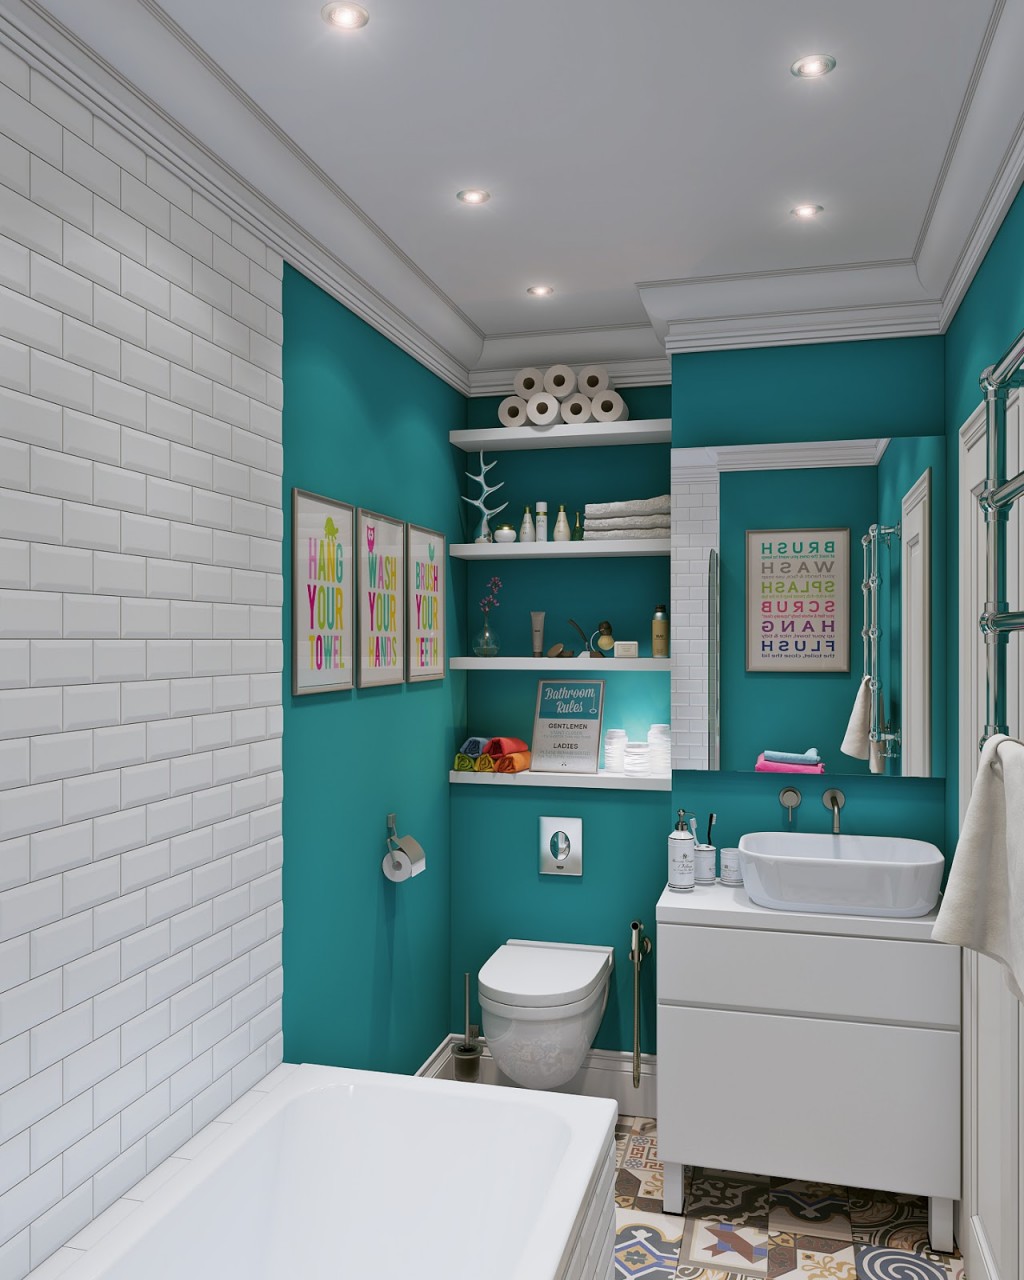 Nice turquoise bathroom